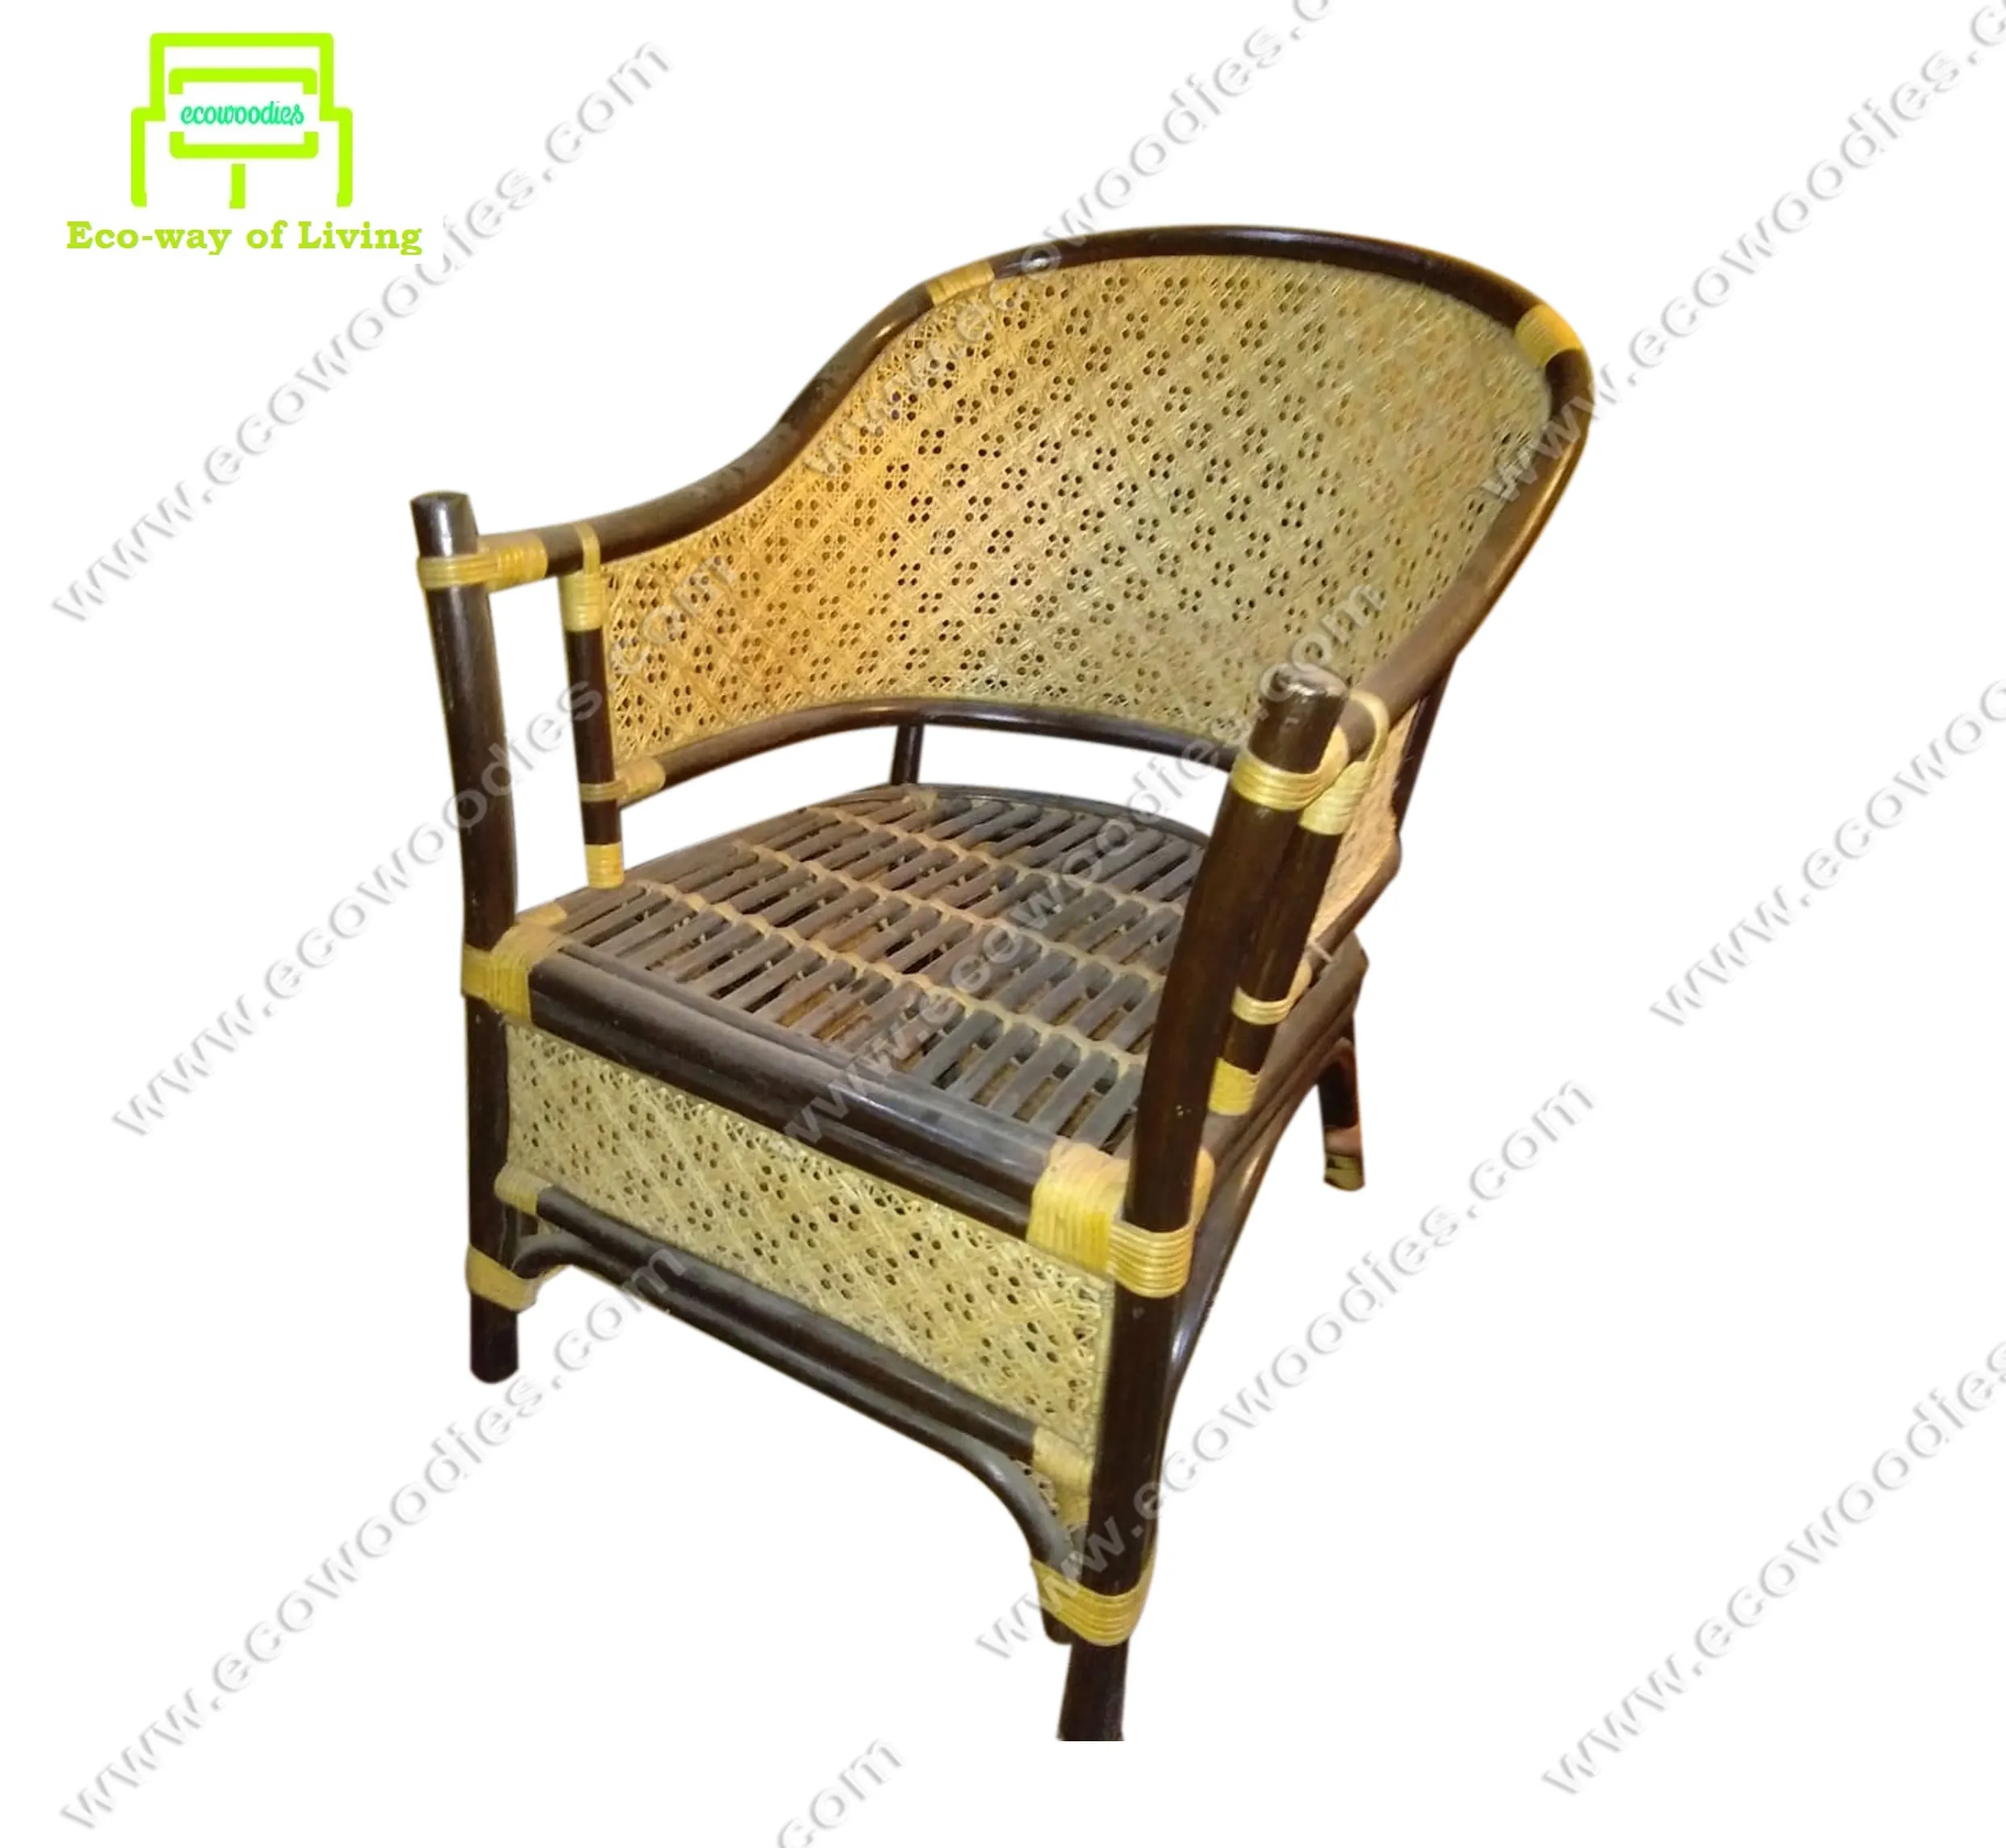 Elegantes Design Hohe Rückenlehne Entspannender Rattan Wicker Bambus Sofa Stuhl Für Wohnzimmer Outdoor Chesterfield Möbel